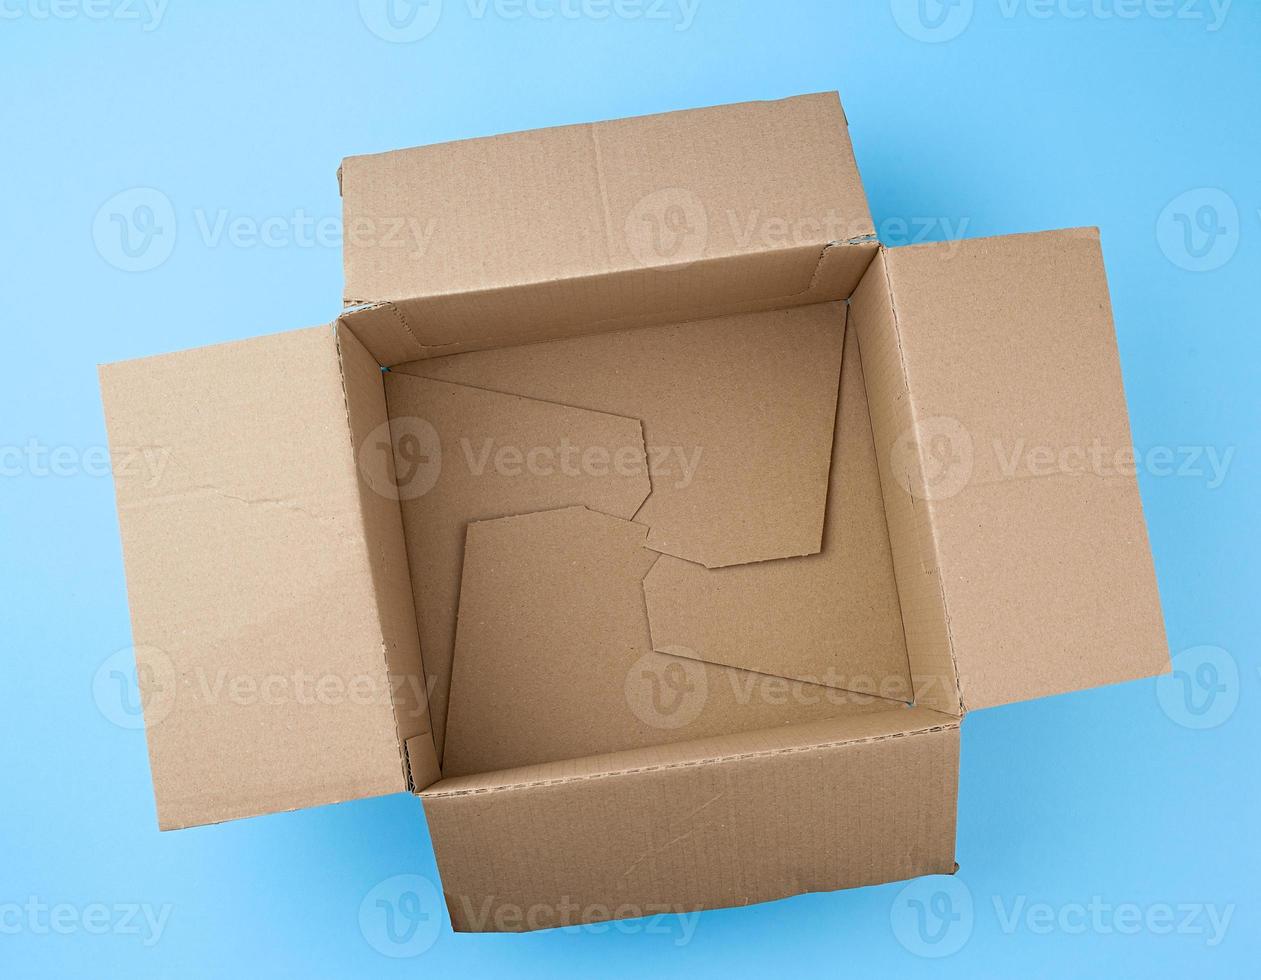 boîte brune en carton vide carrée ouverte pour emballer et expédier des choses photo